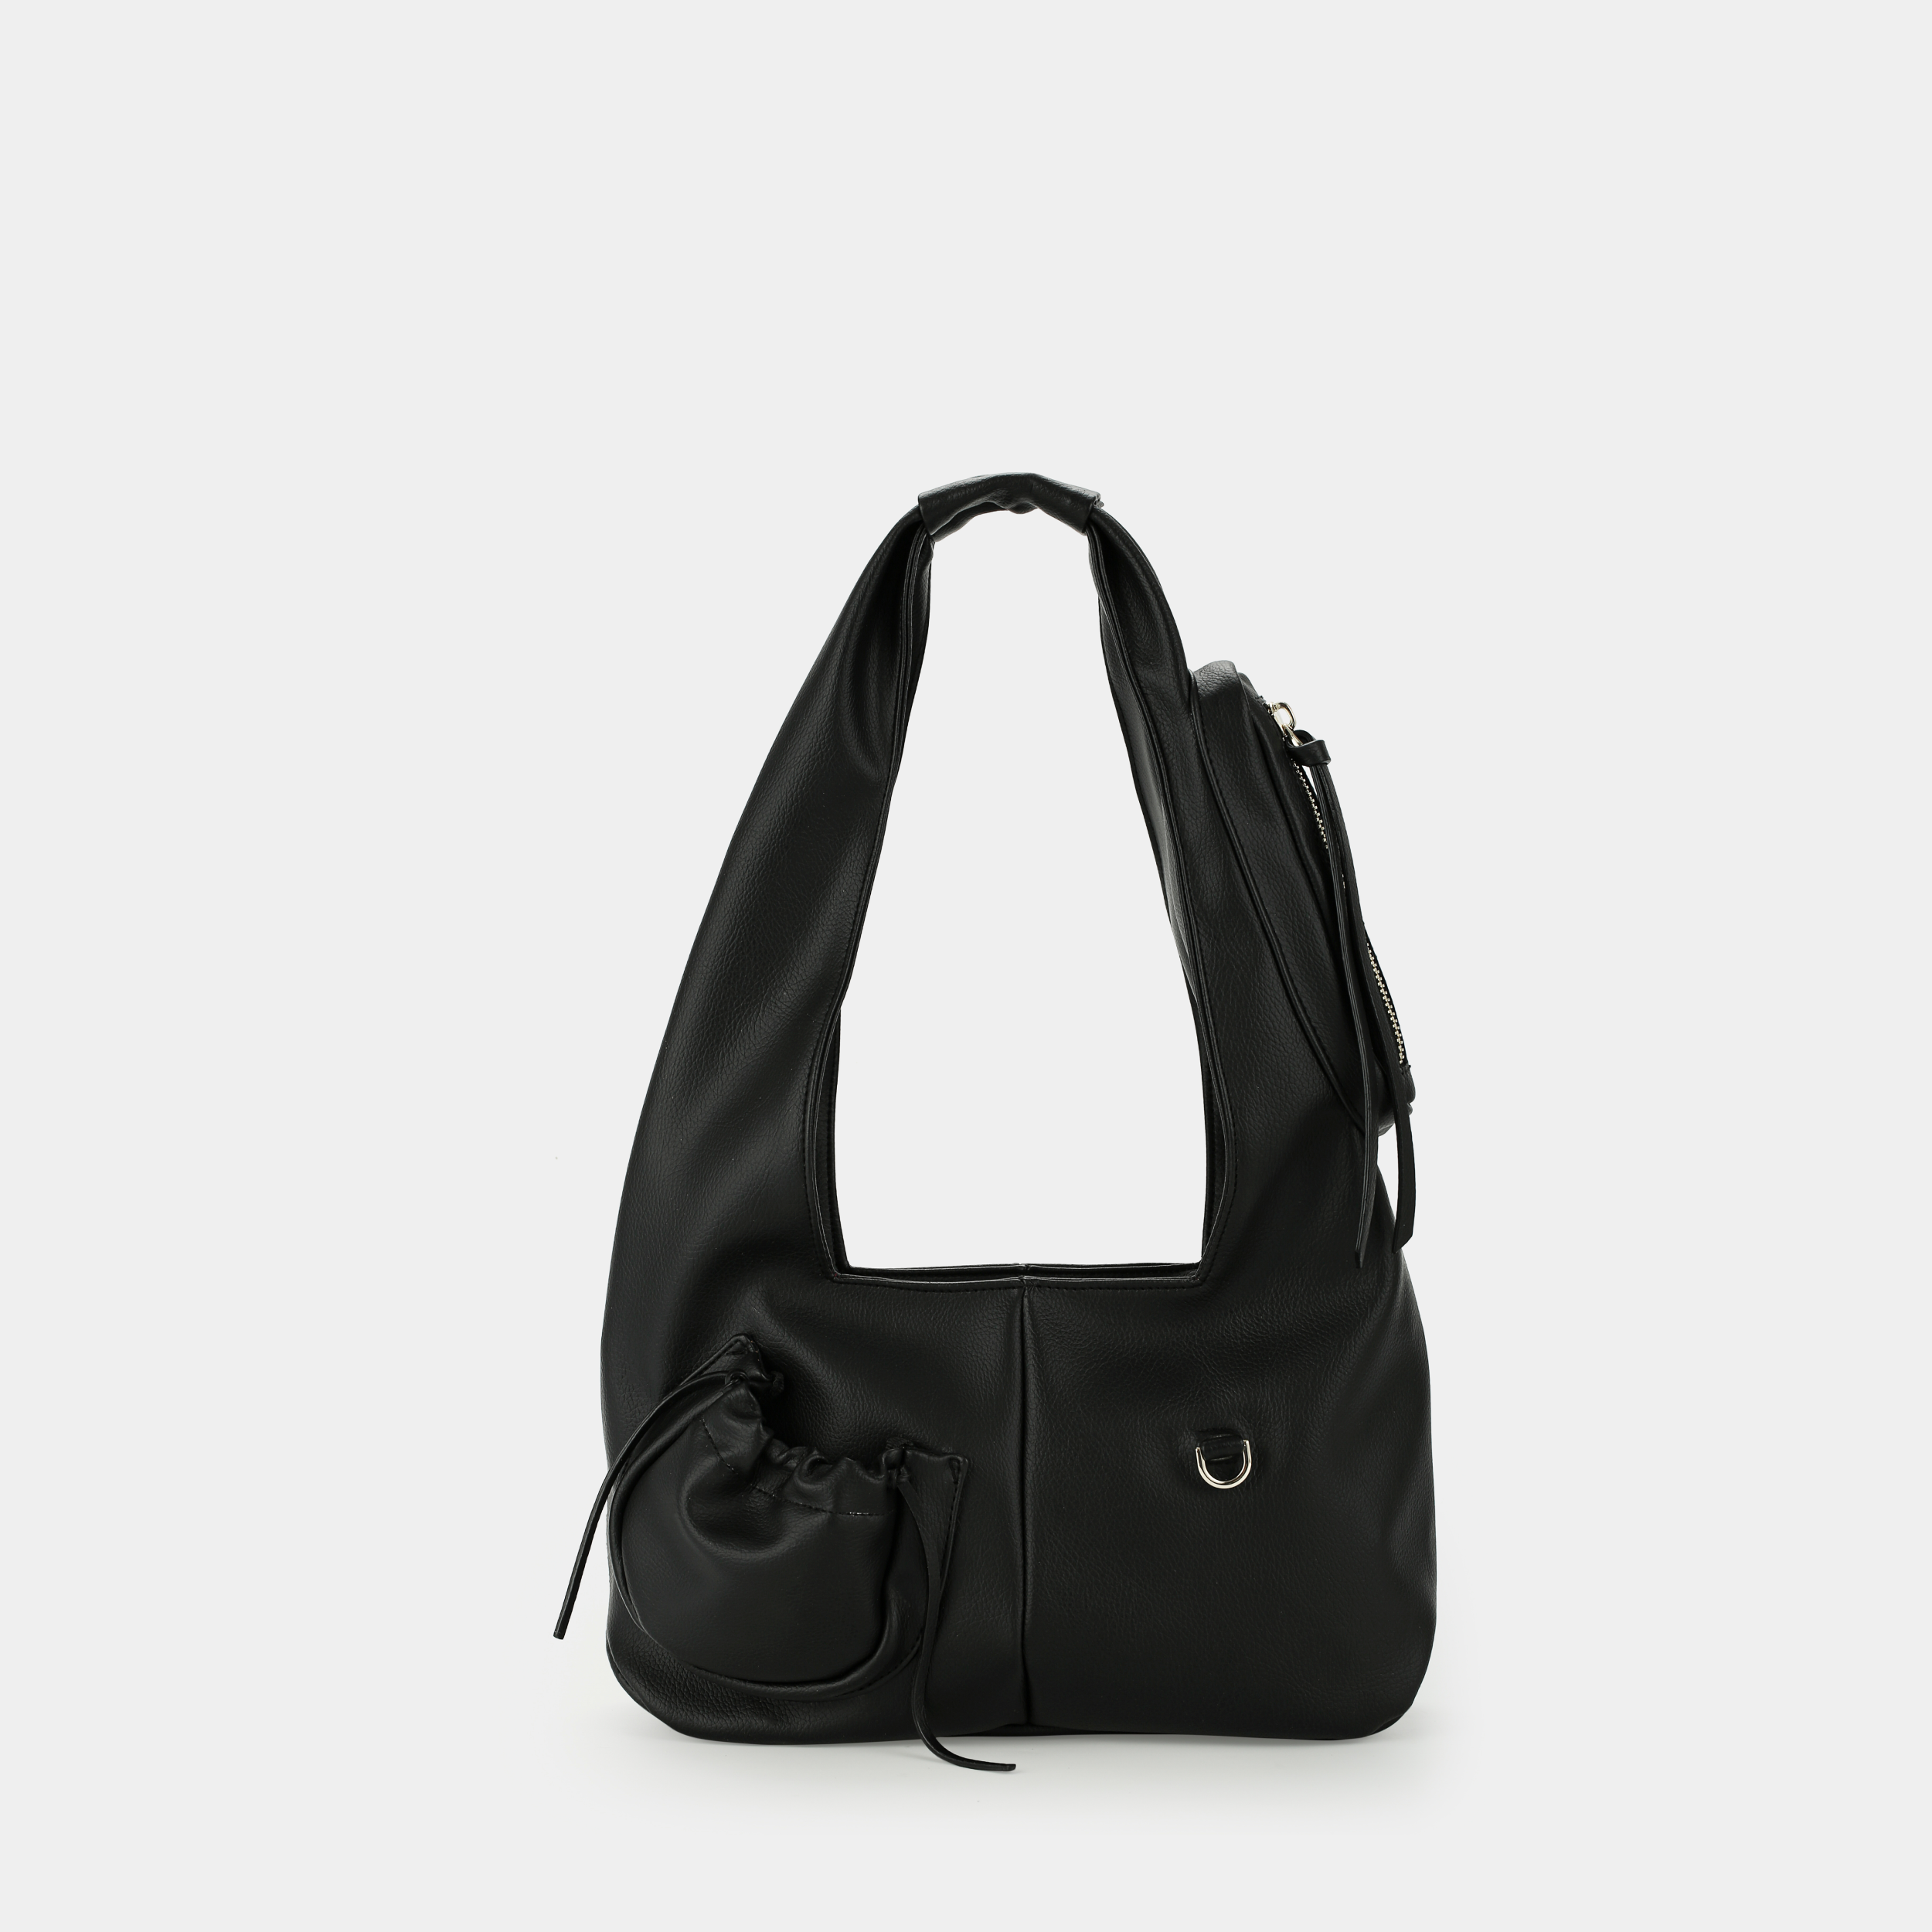 Túi xách Hobo C2-Pocket size Medium (M) màu đen